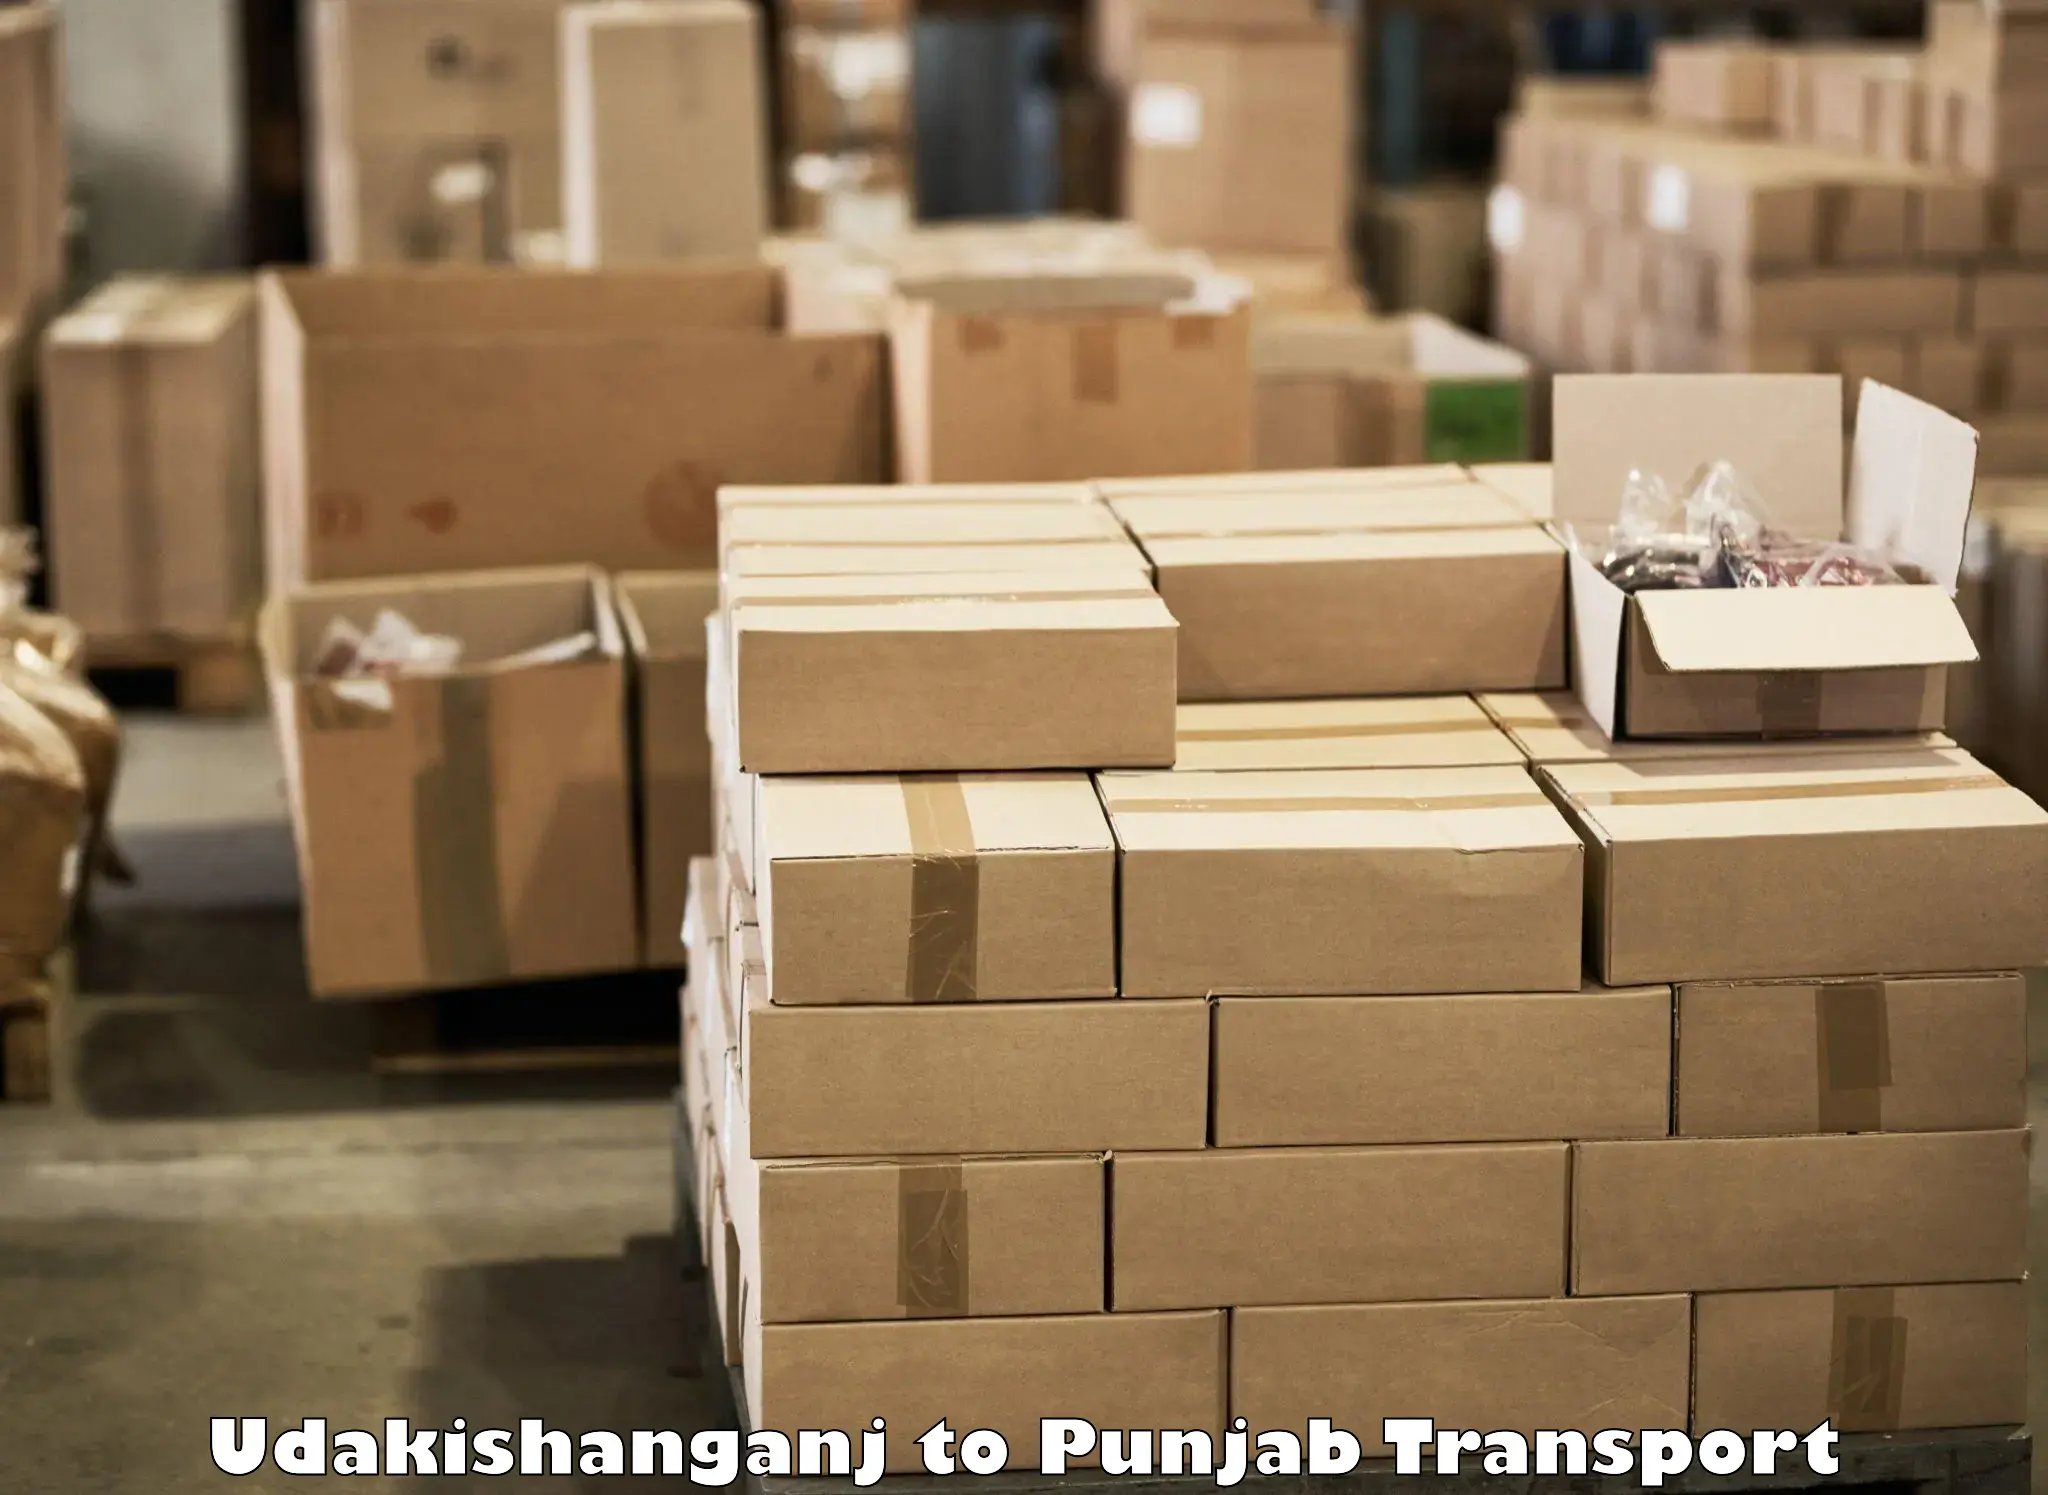 Shipping partner Udakishanganj to Fatehgarh Sahib